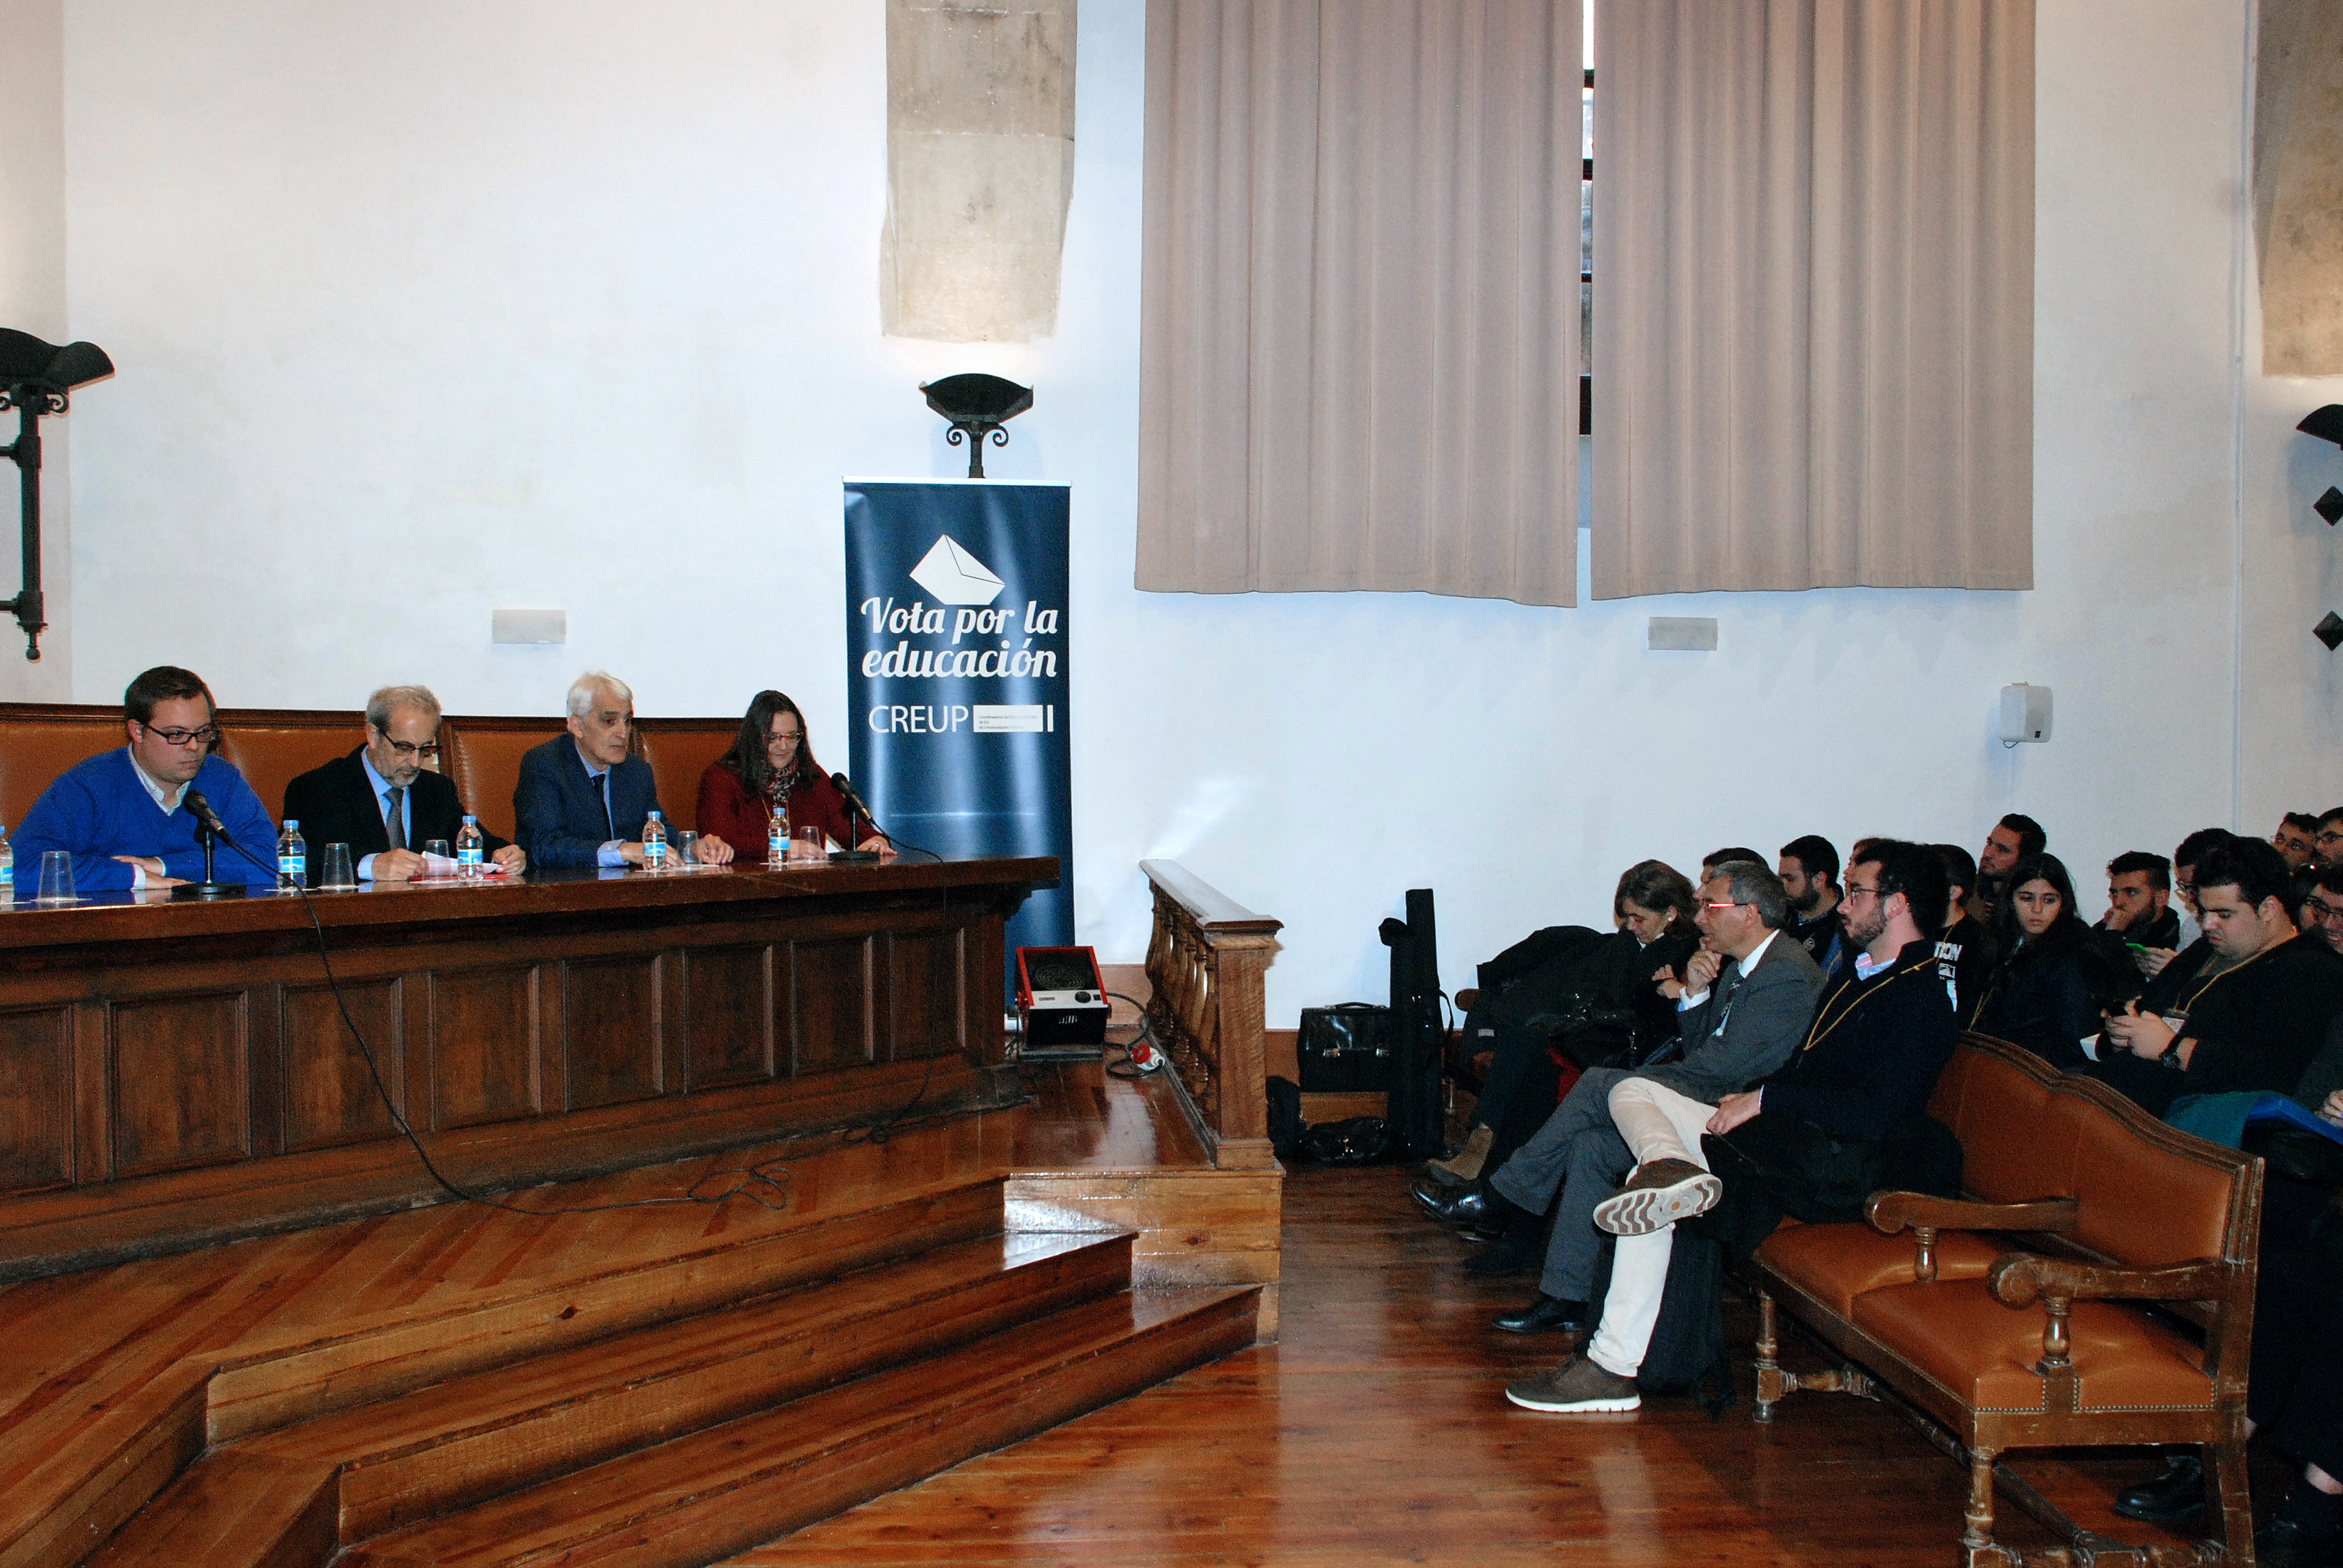 El rector, Daniel Hernández Ruipérez, asiste a la inauguración en la Usal de la asamblea general de la Coordinadora de Representantes de Estudiantes de Universidades Públicas (CREUP) 